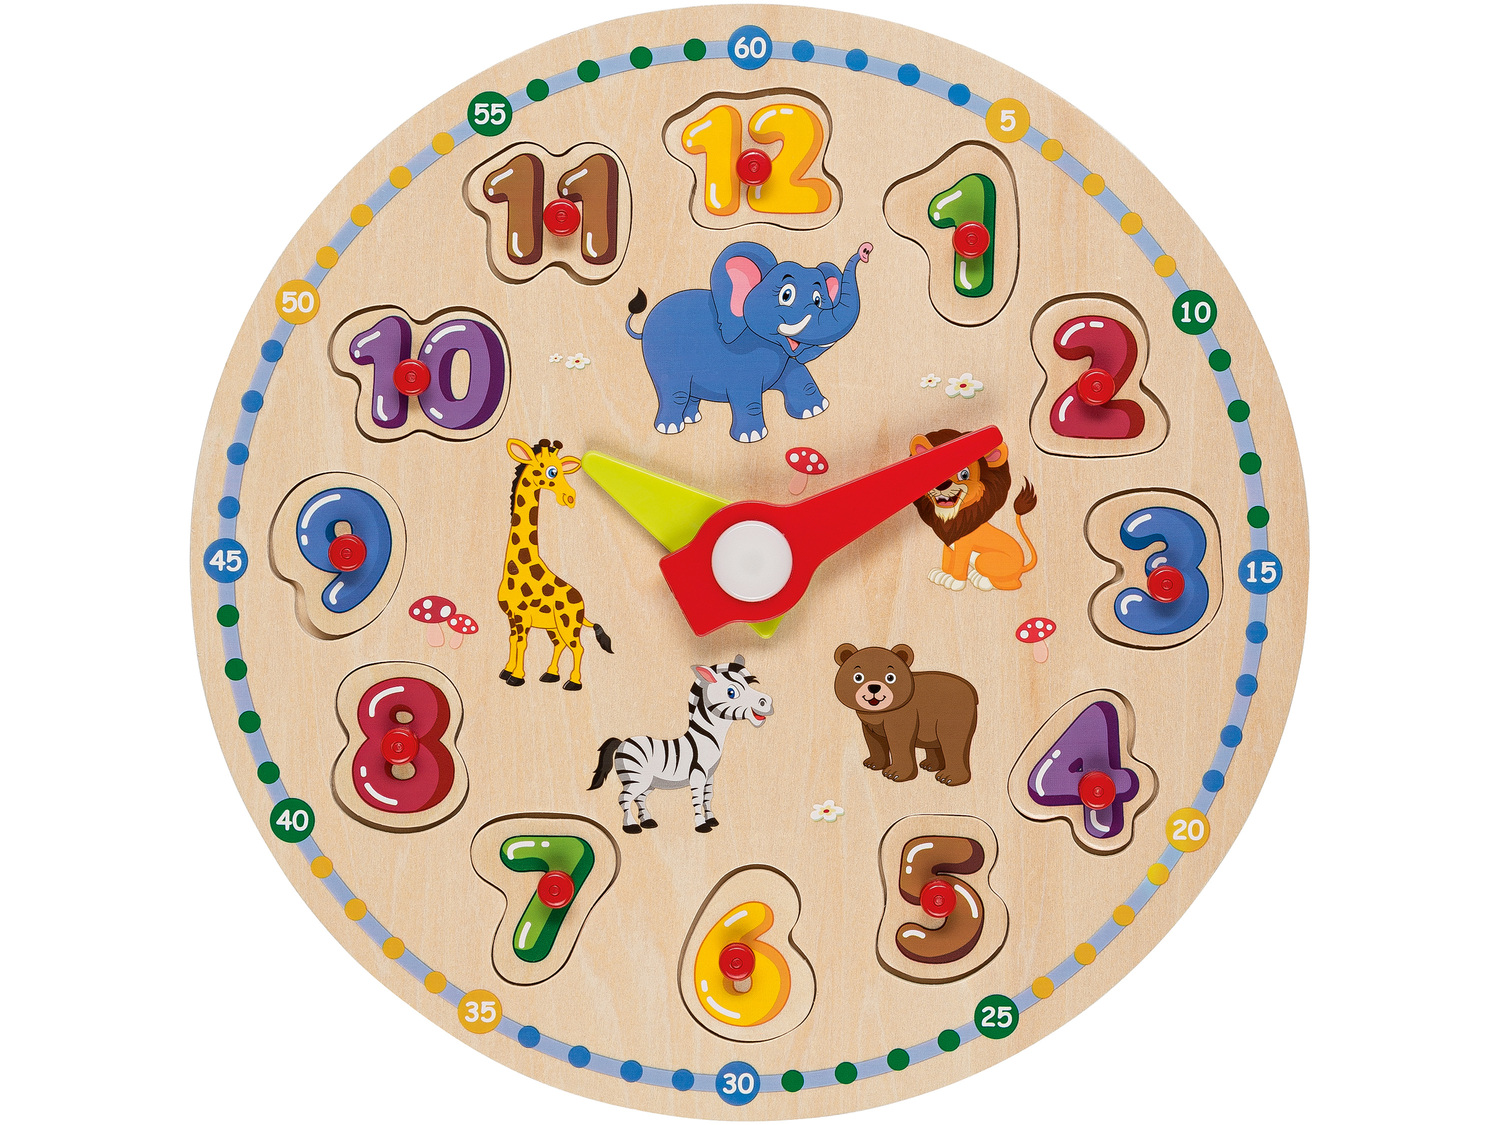 Drewniana zabawka edukacyjna Playtive Junior, cena 17,99 PLN 
- do wyboru: labirynt, ...